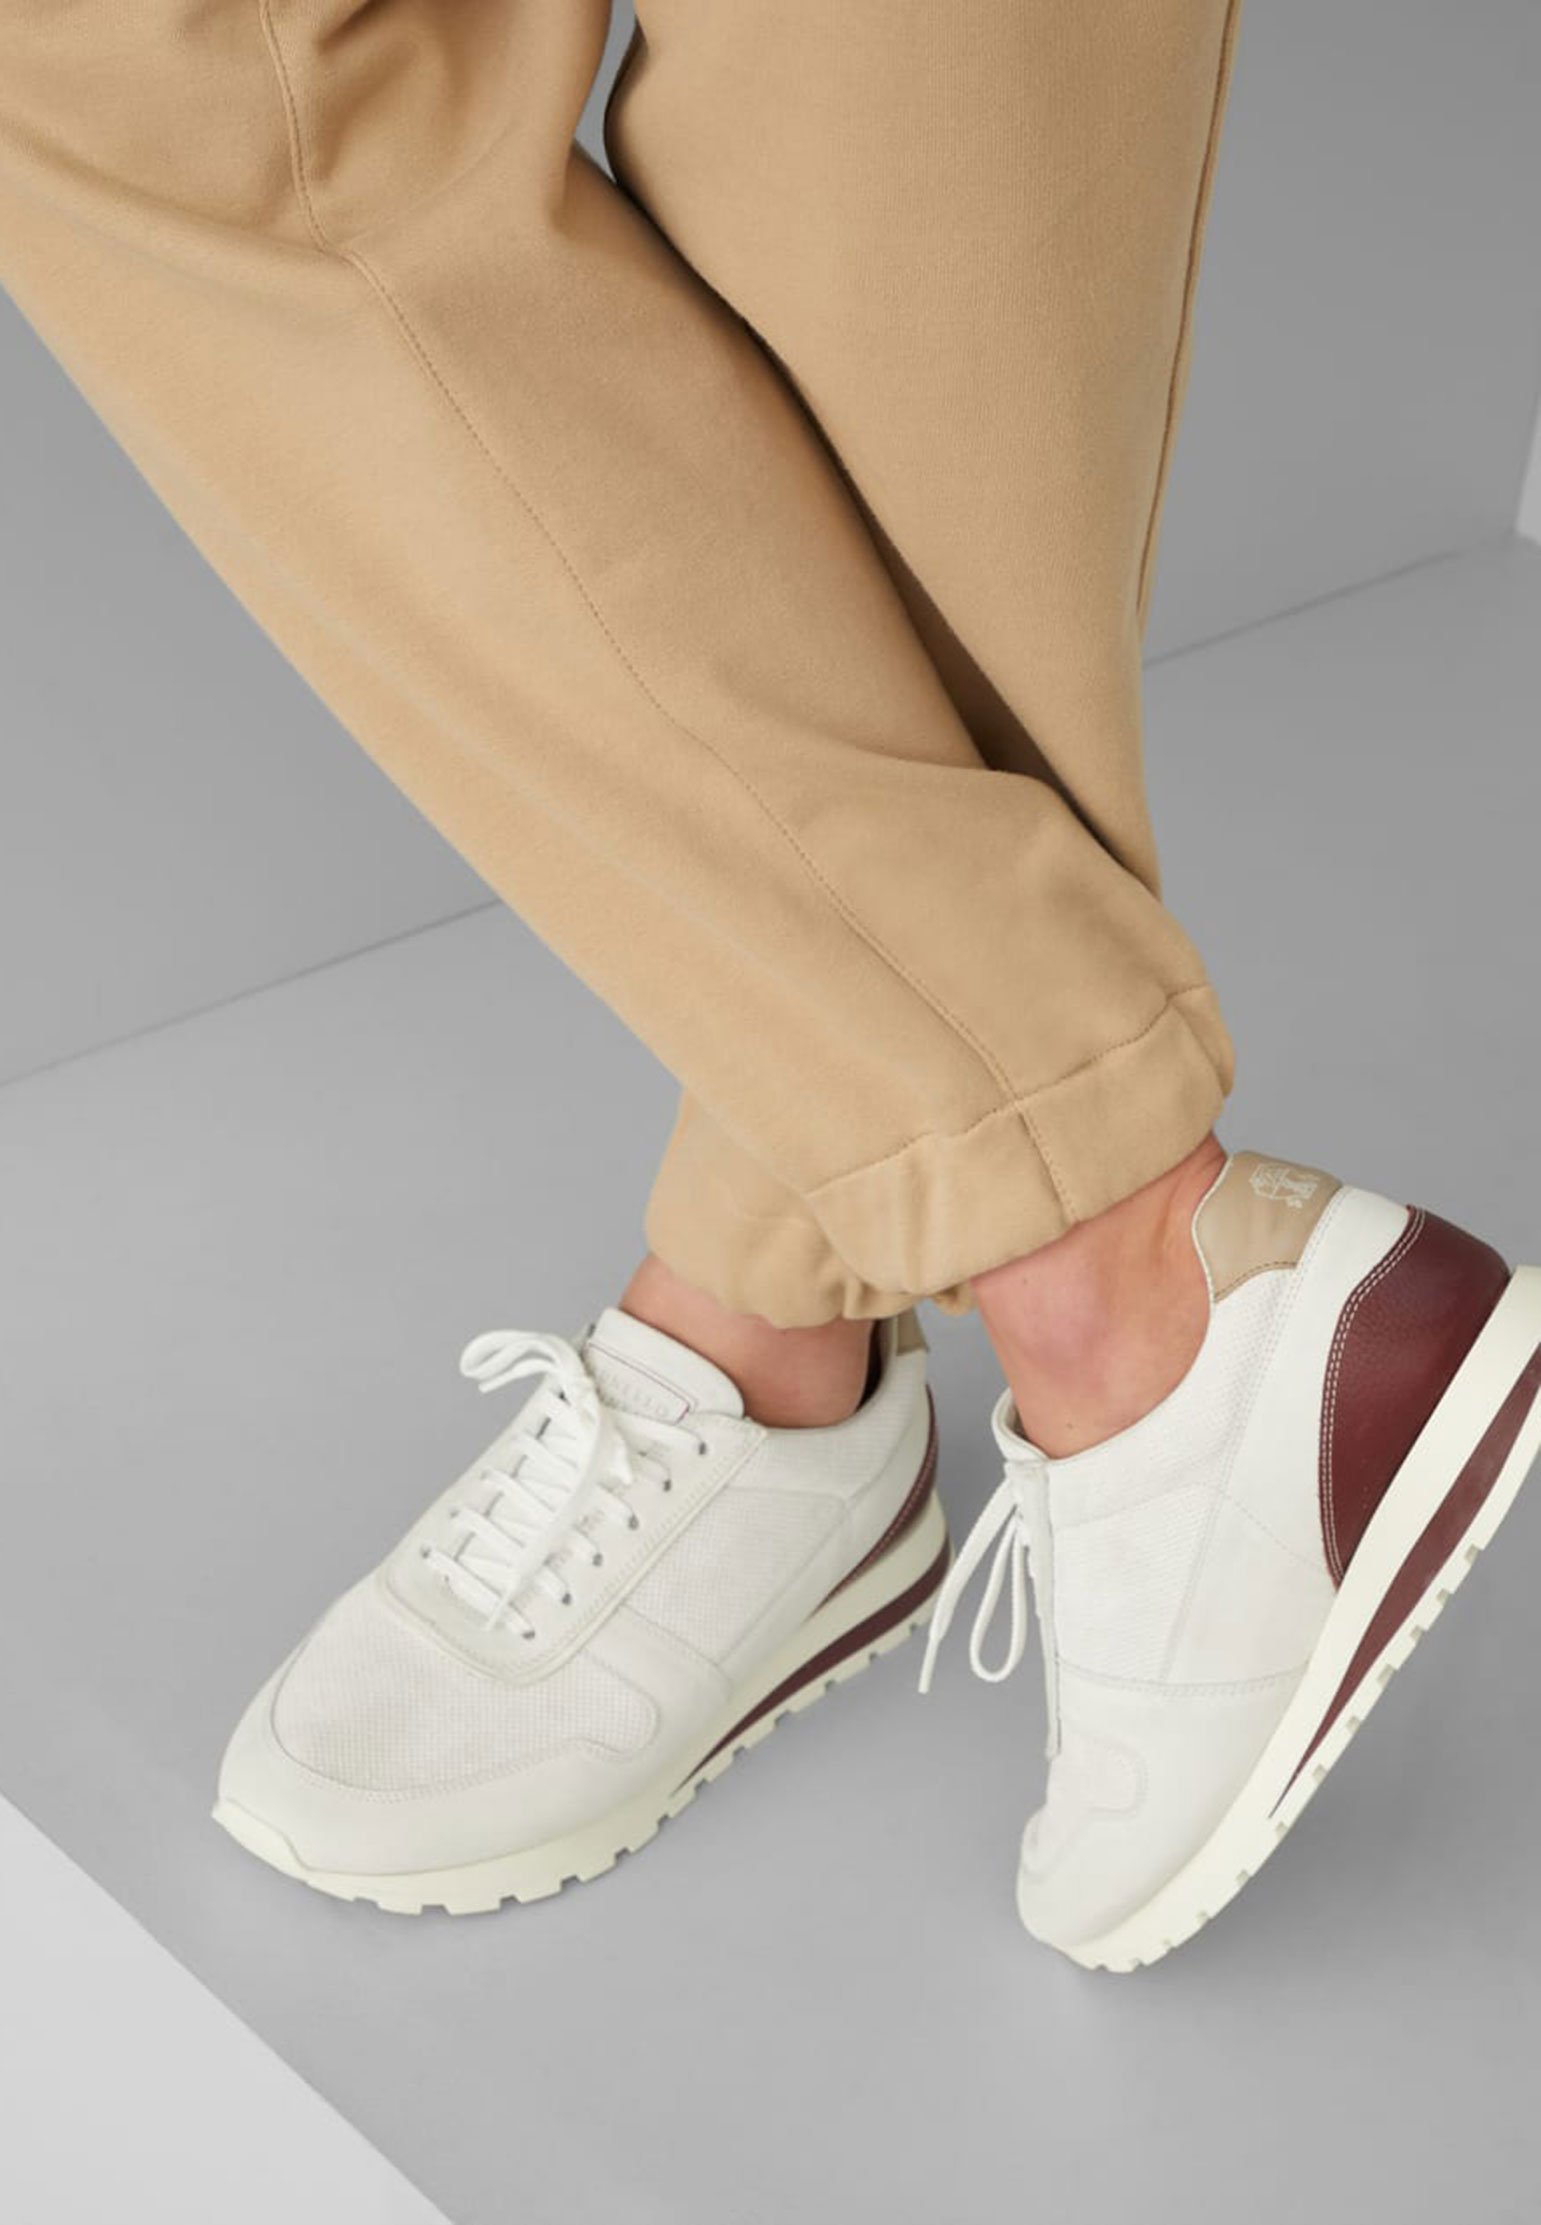 Sneakers BRUNELLO CUCINELLI Color: white (Code: 3485) in online store Allure